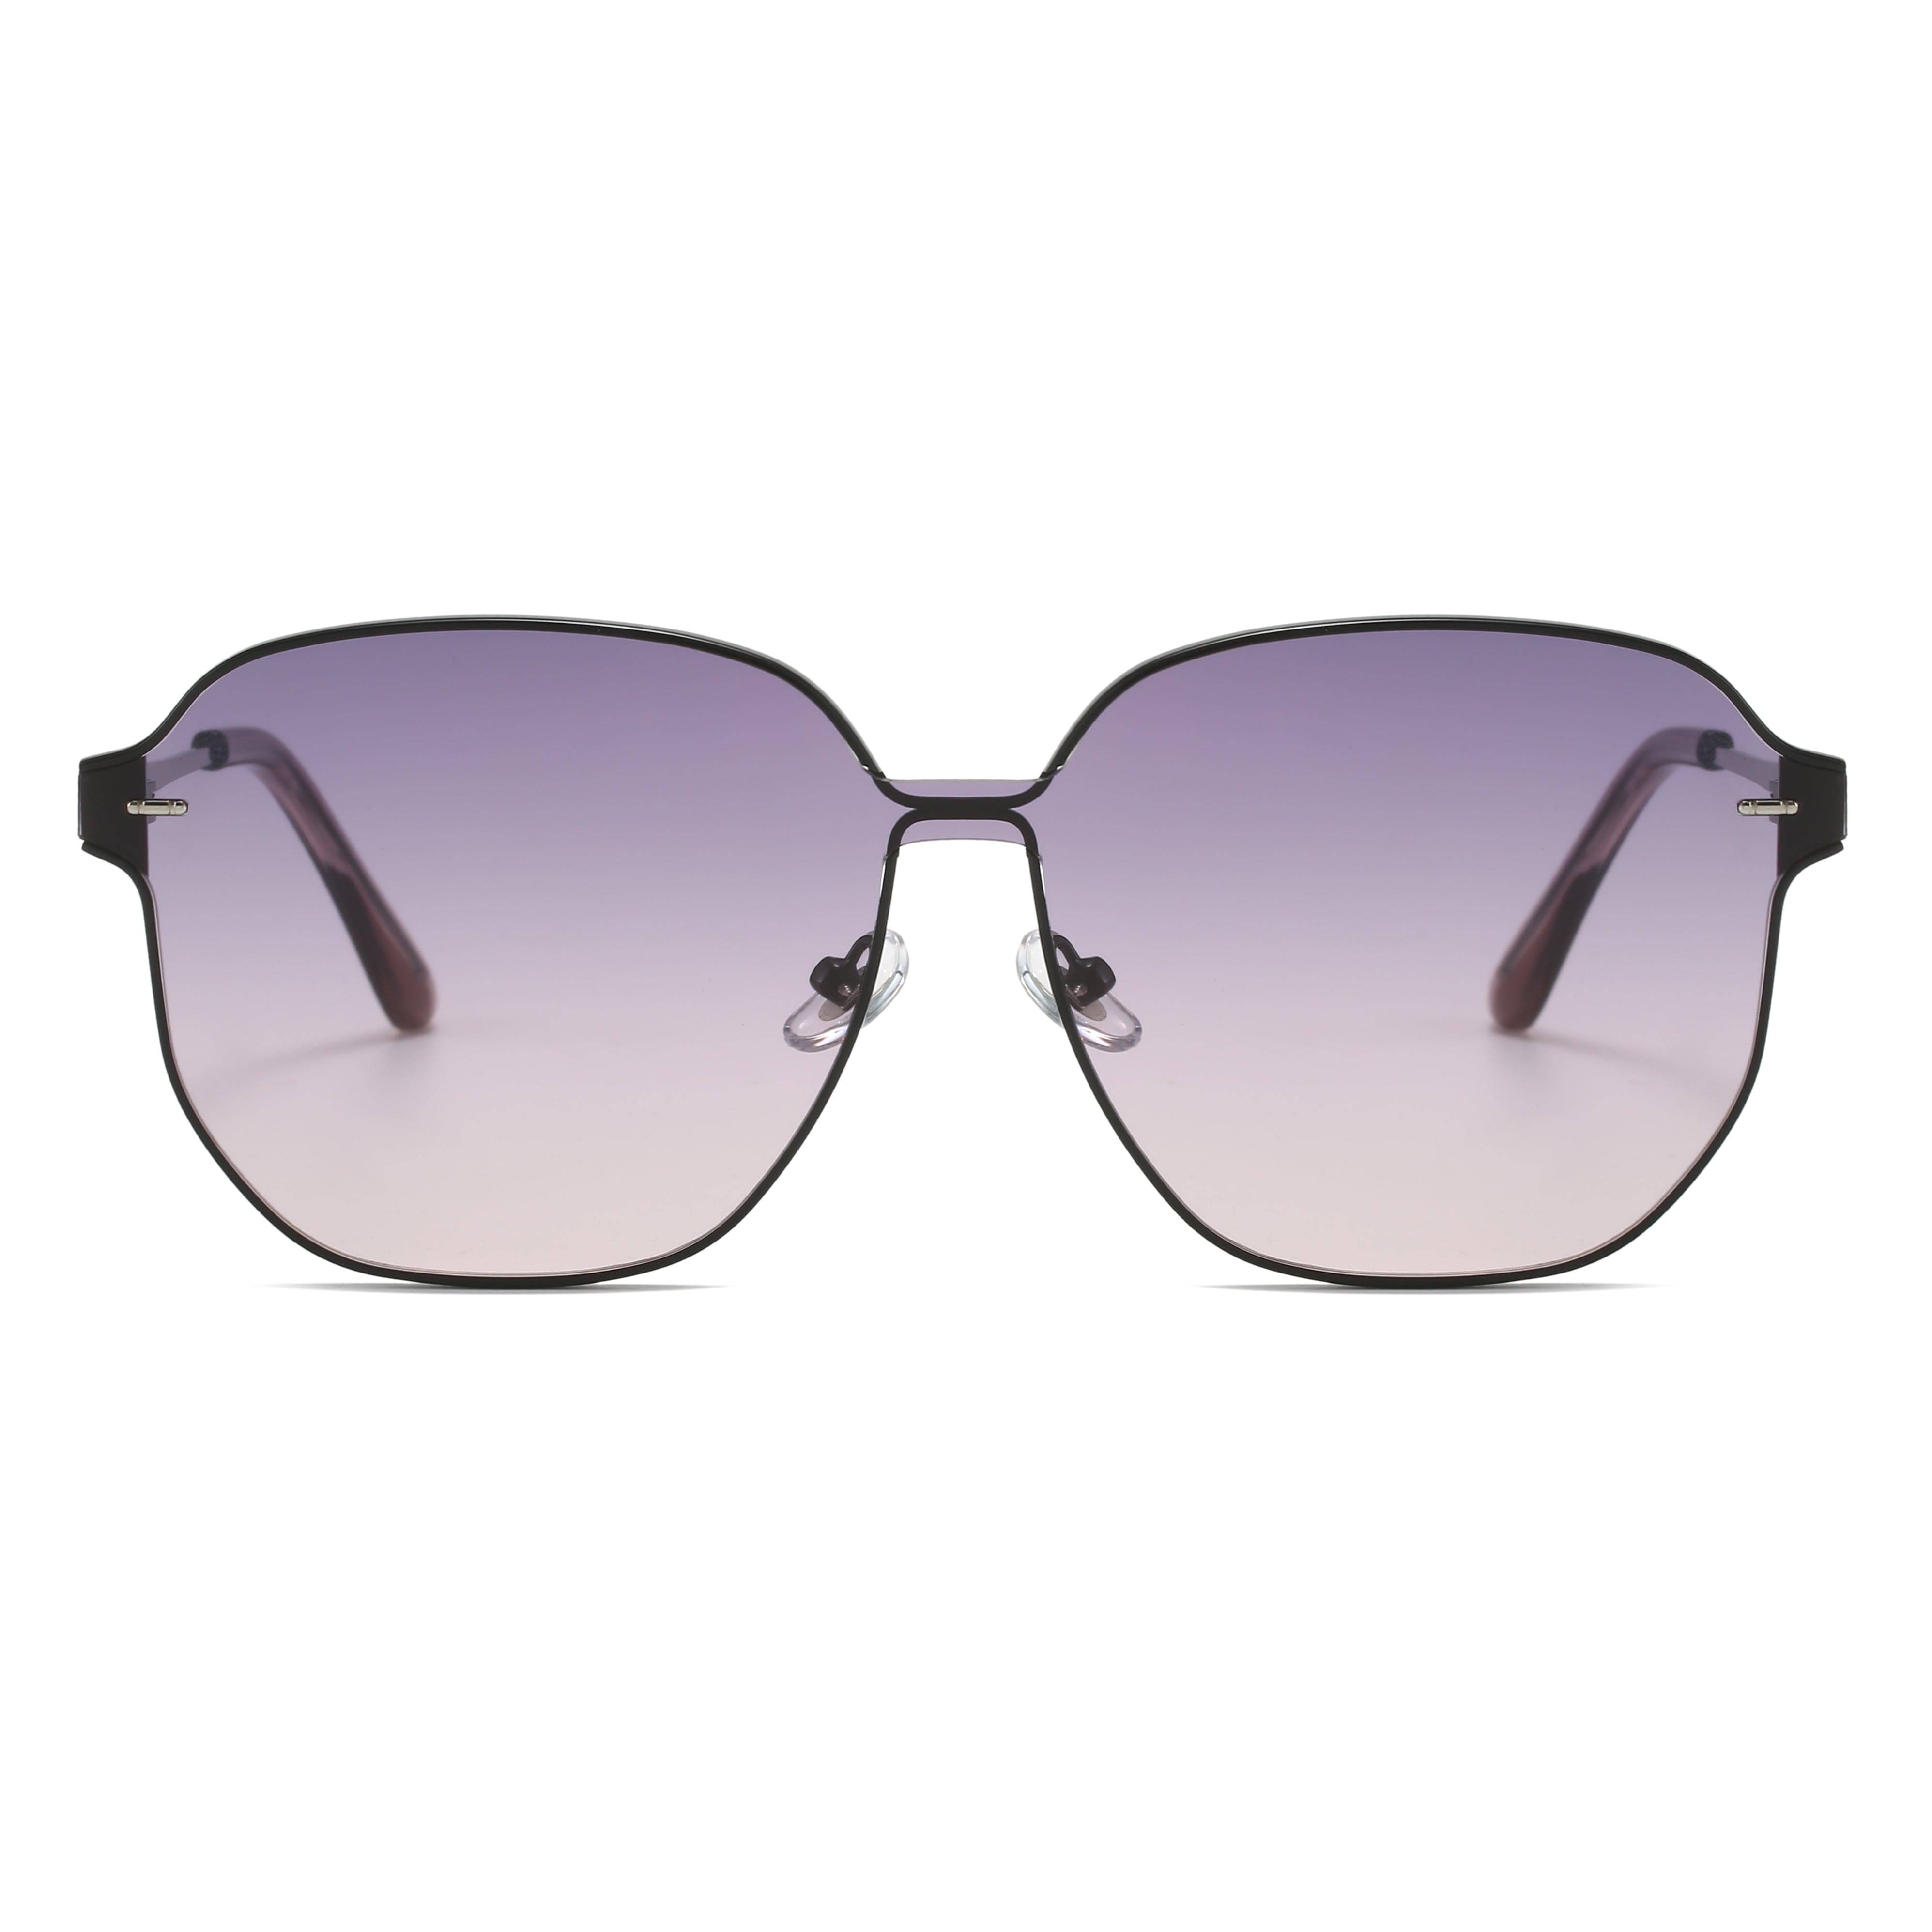 GIUSTIZIERI VECCHI Sunglasses Large / Pastel Violet PristinePearl Duo